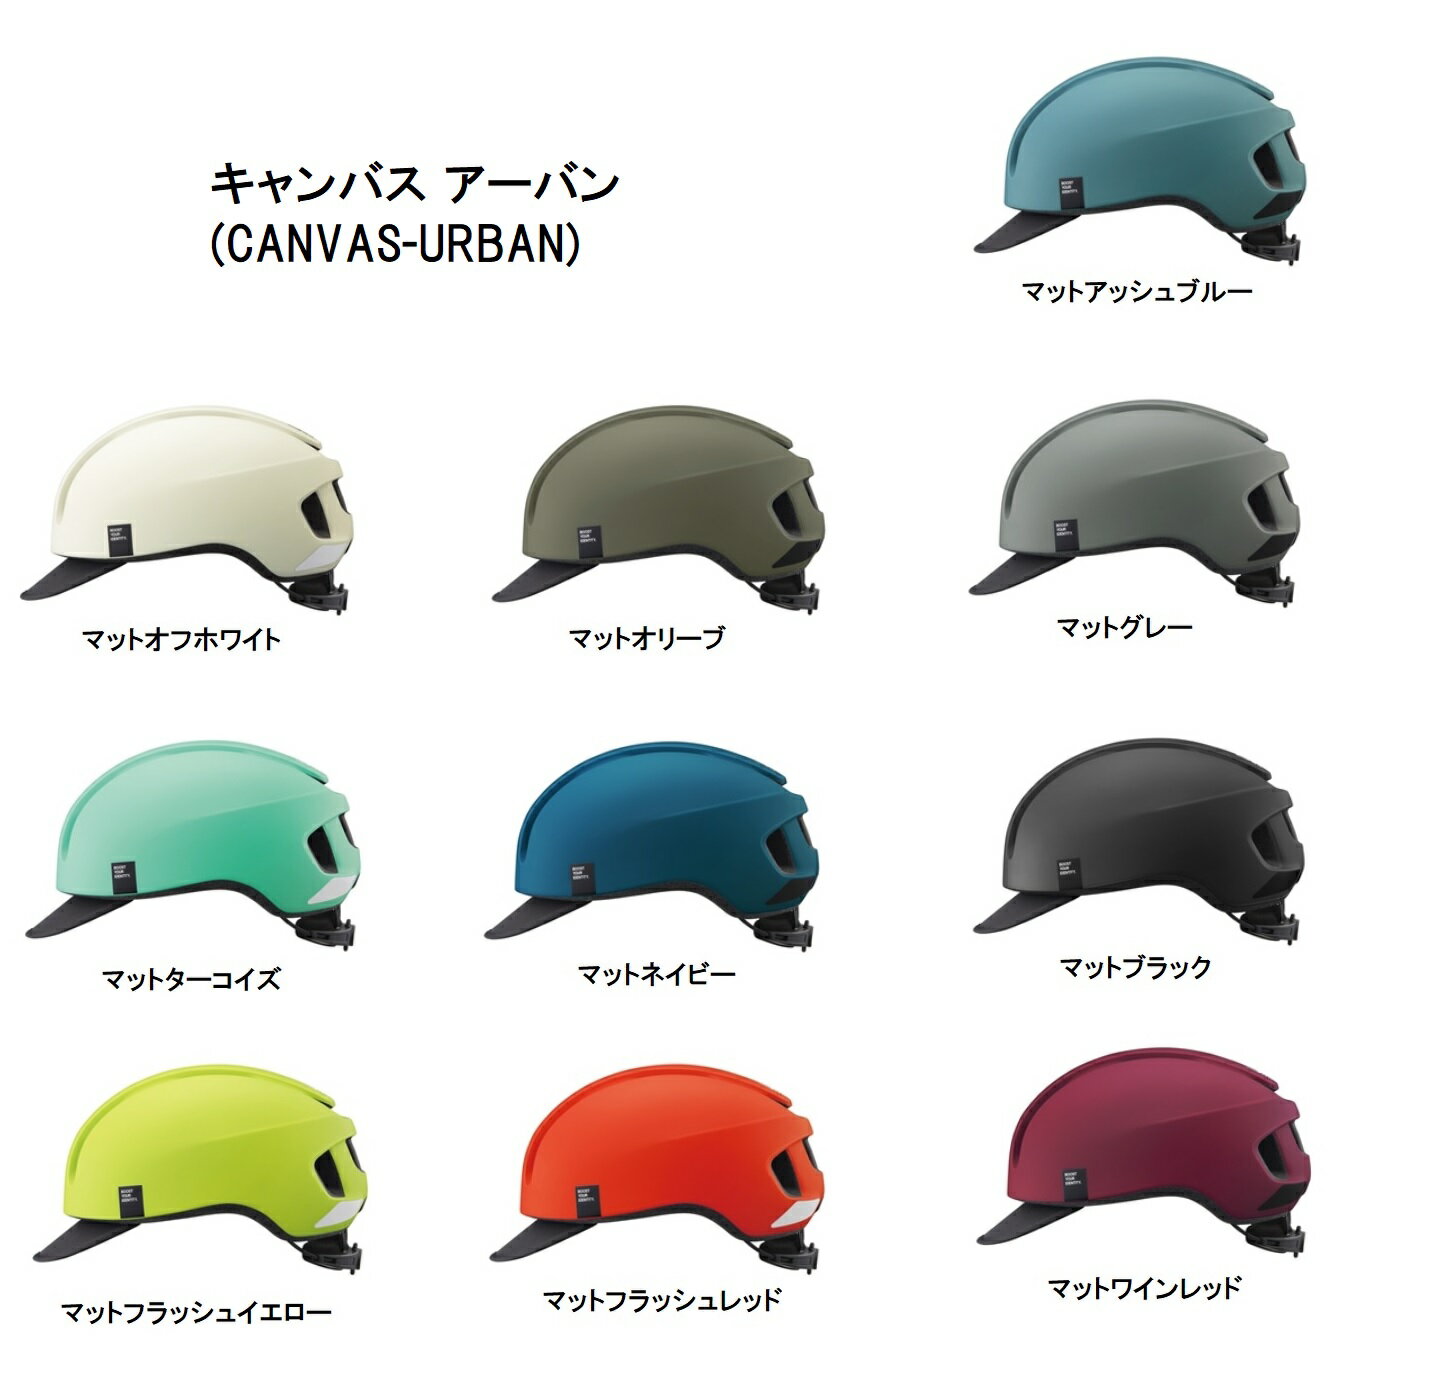 (免運) 日本公司貨 OGK KABUTO CANVAS-URBAN 自行車安全帽 JCF推薦 57-59cm M-L頭圍適用 時尚